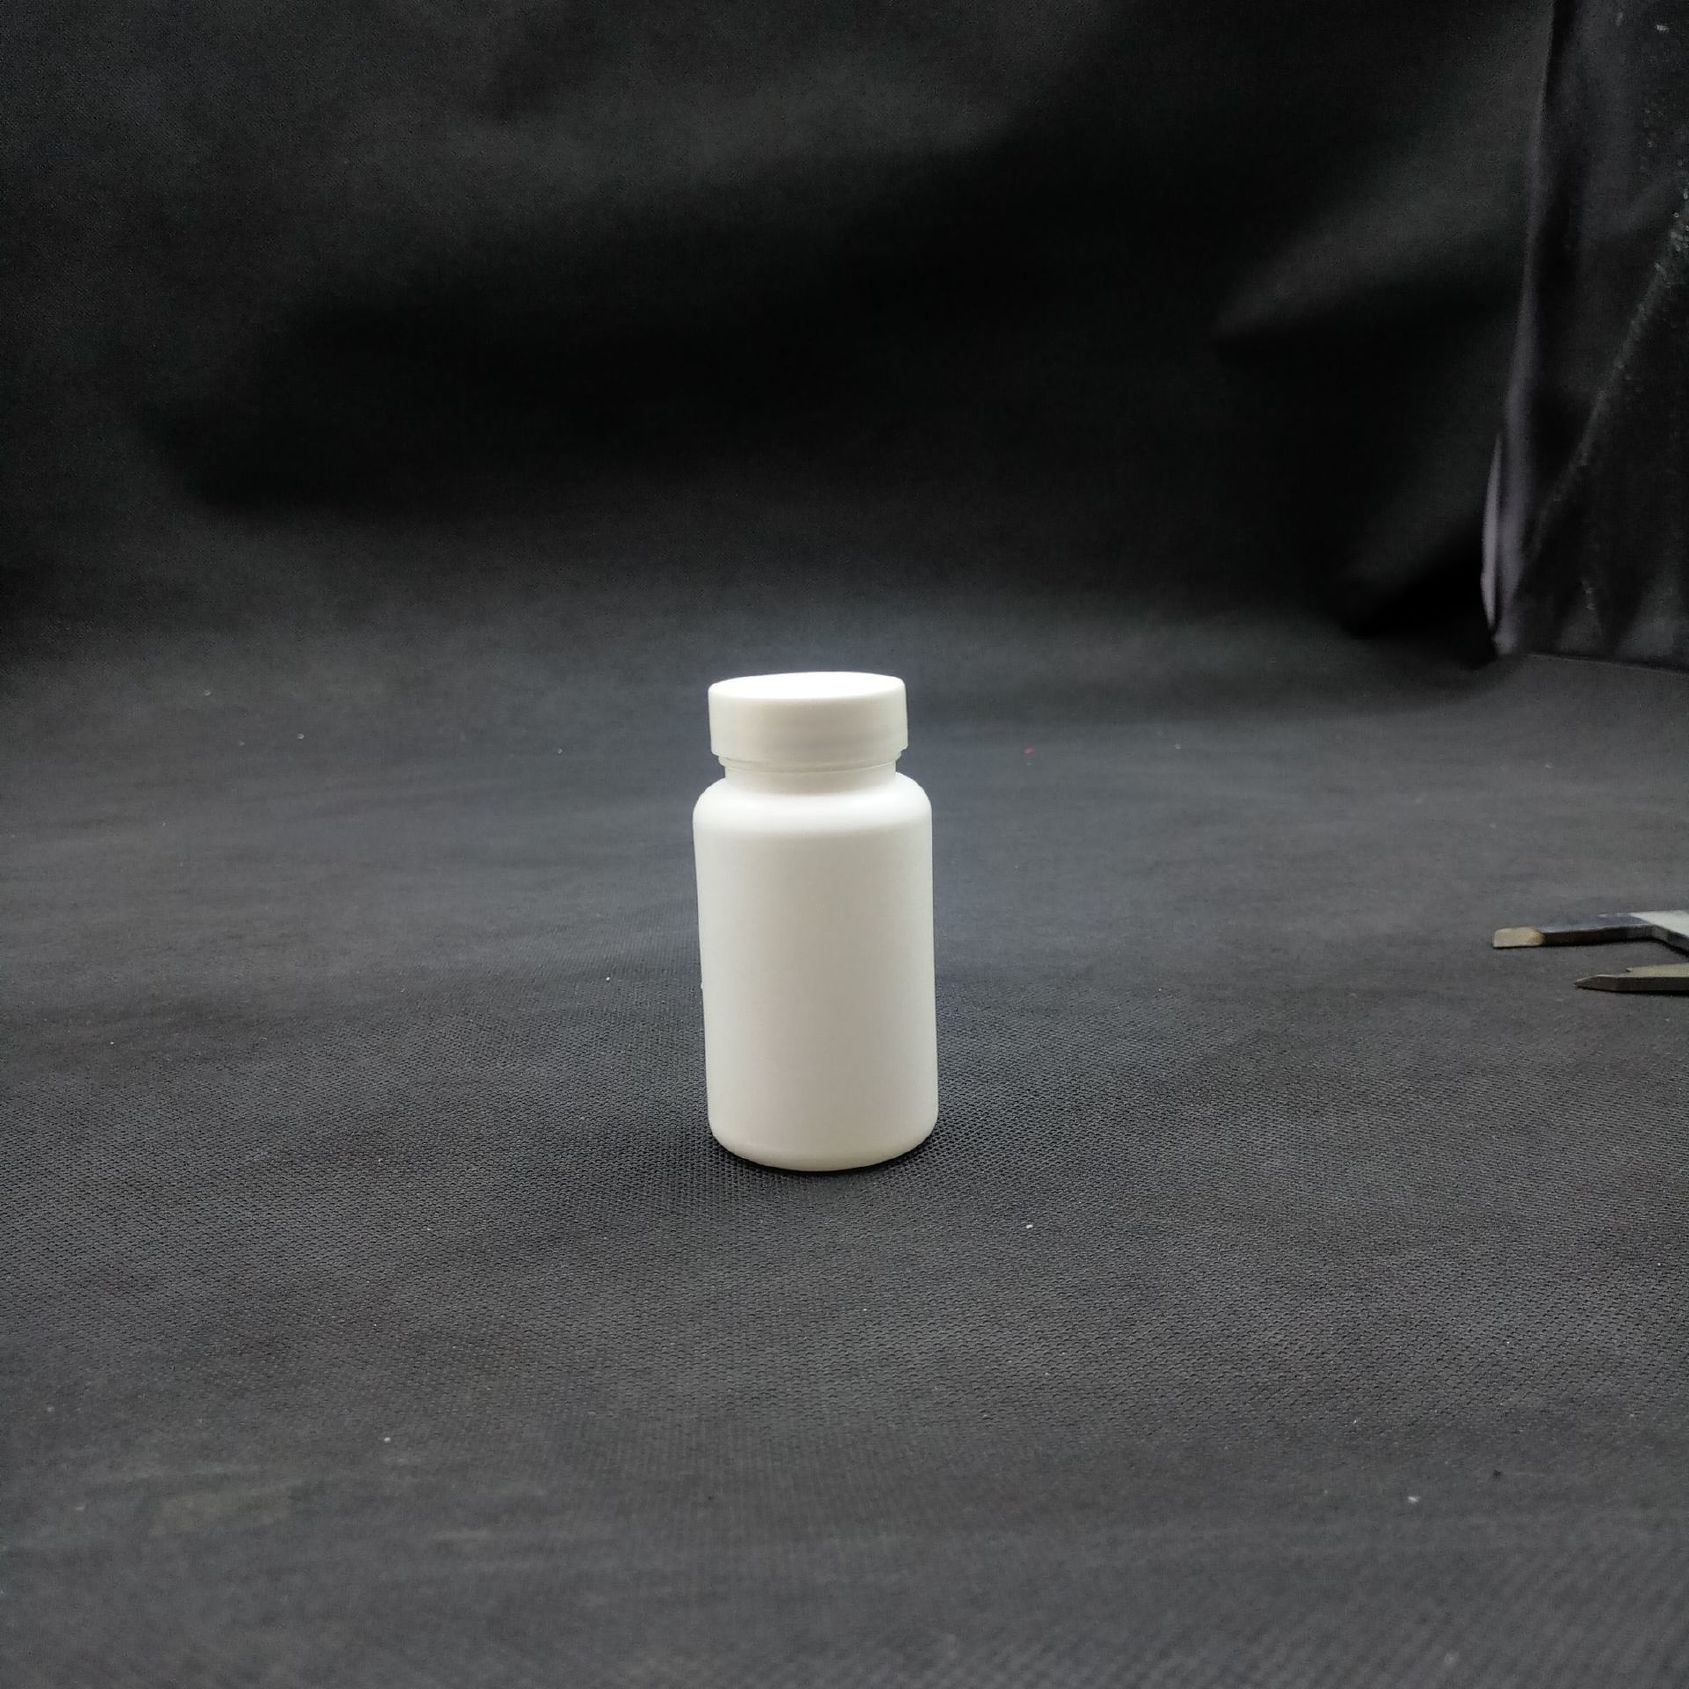 厂家批发50g高密度聚乙烯大口粉瓶兽药鱼药保健品瓶示例图12